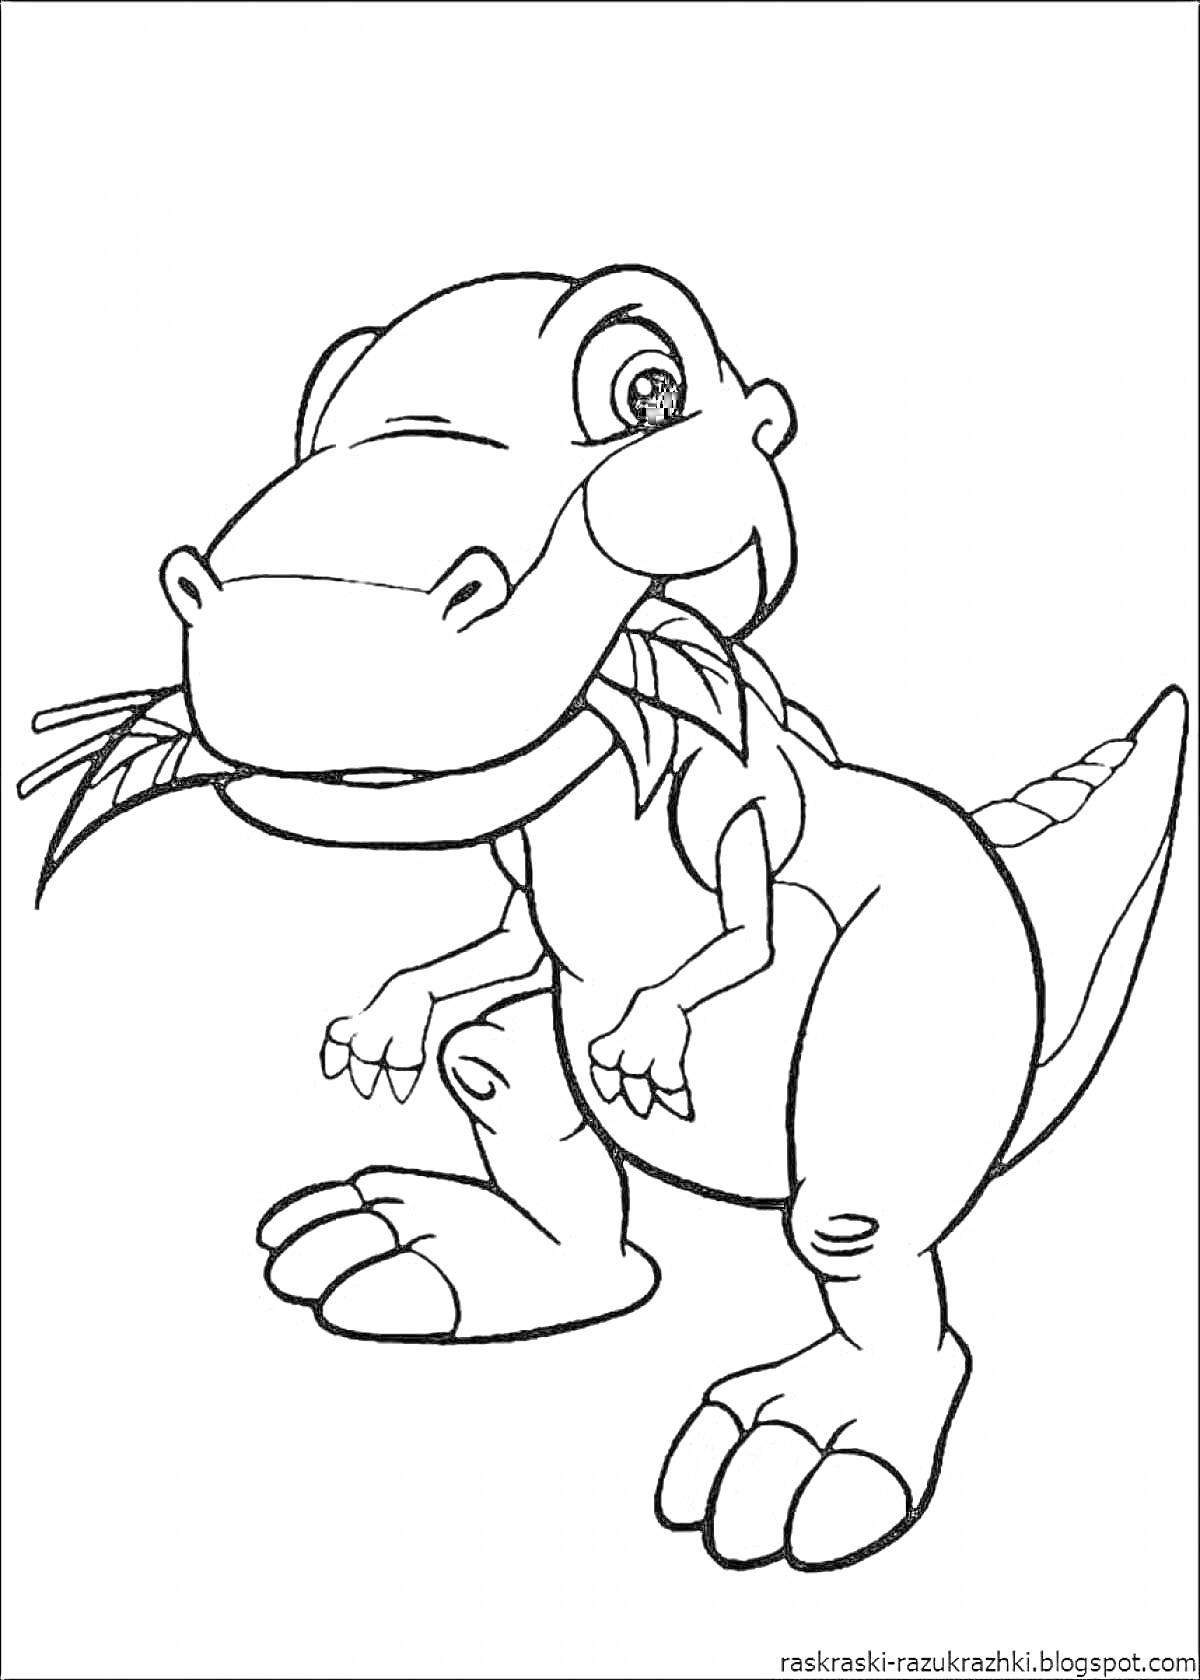 Раскраска Динозавр с листиком во рту